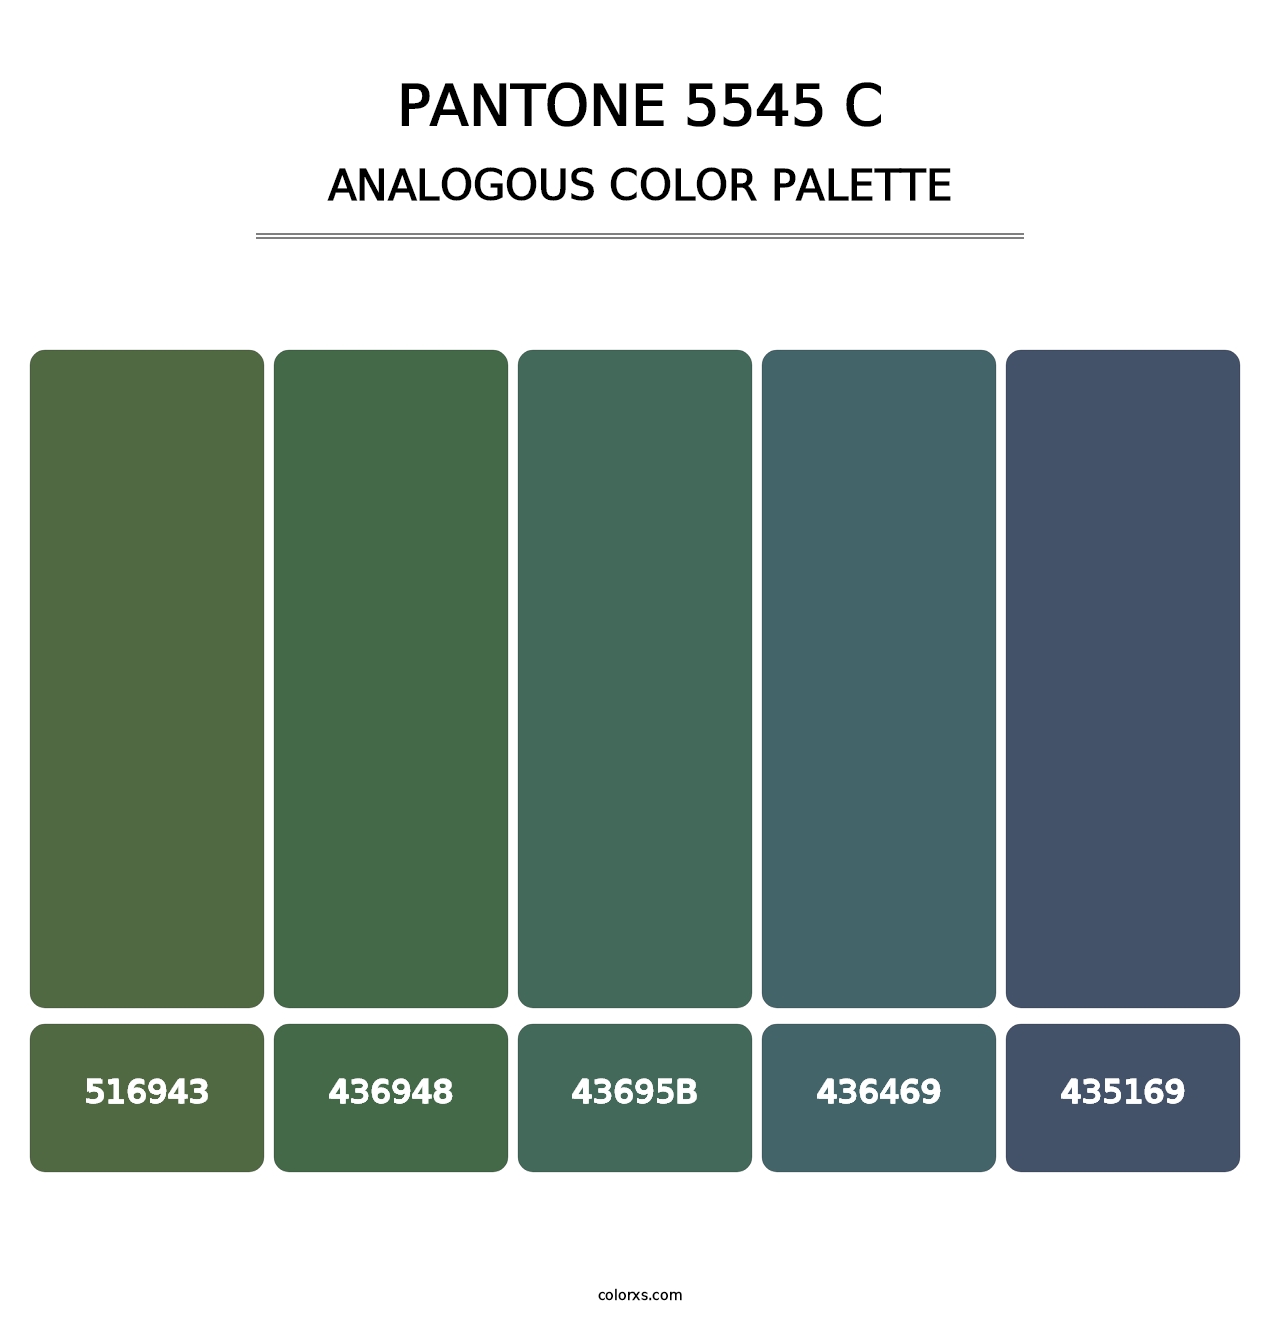 PANTONE 5545 C - Analogous Color Palette